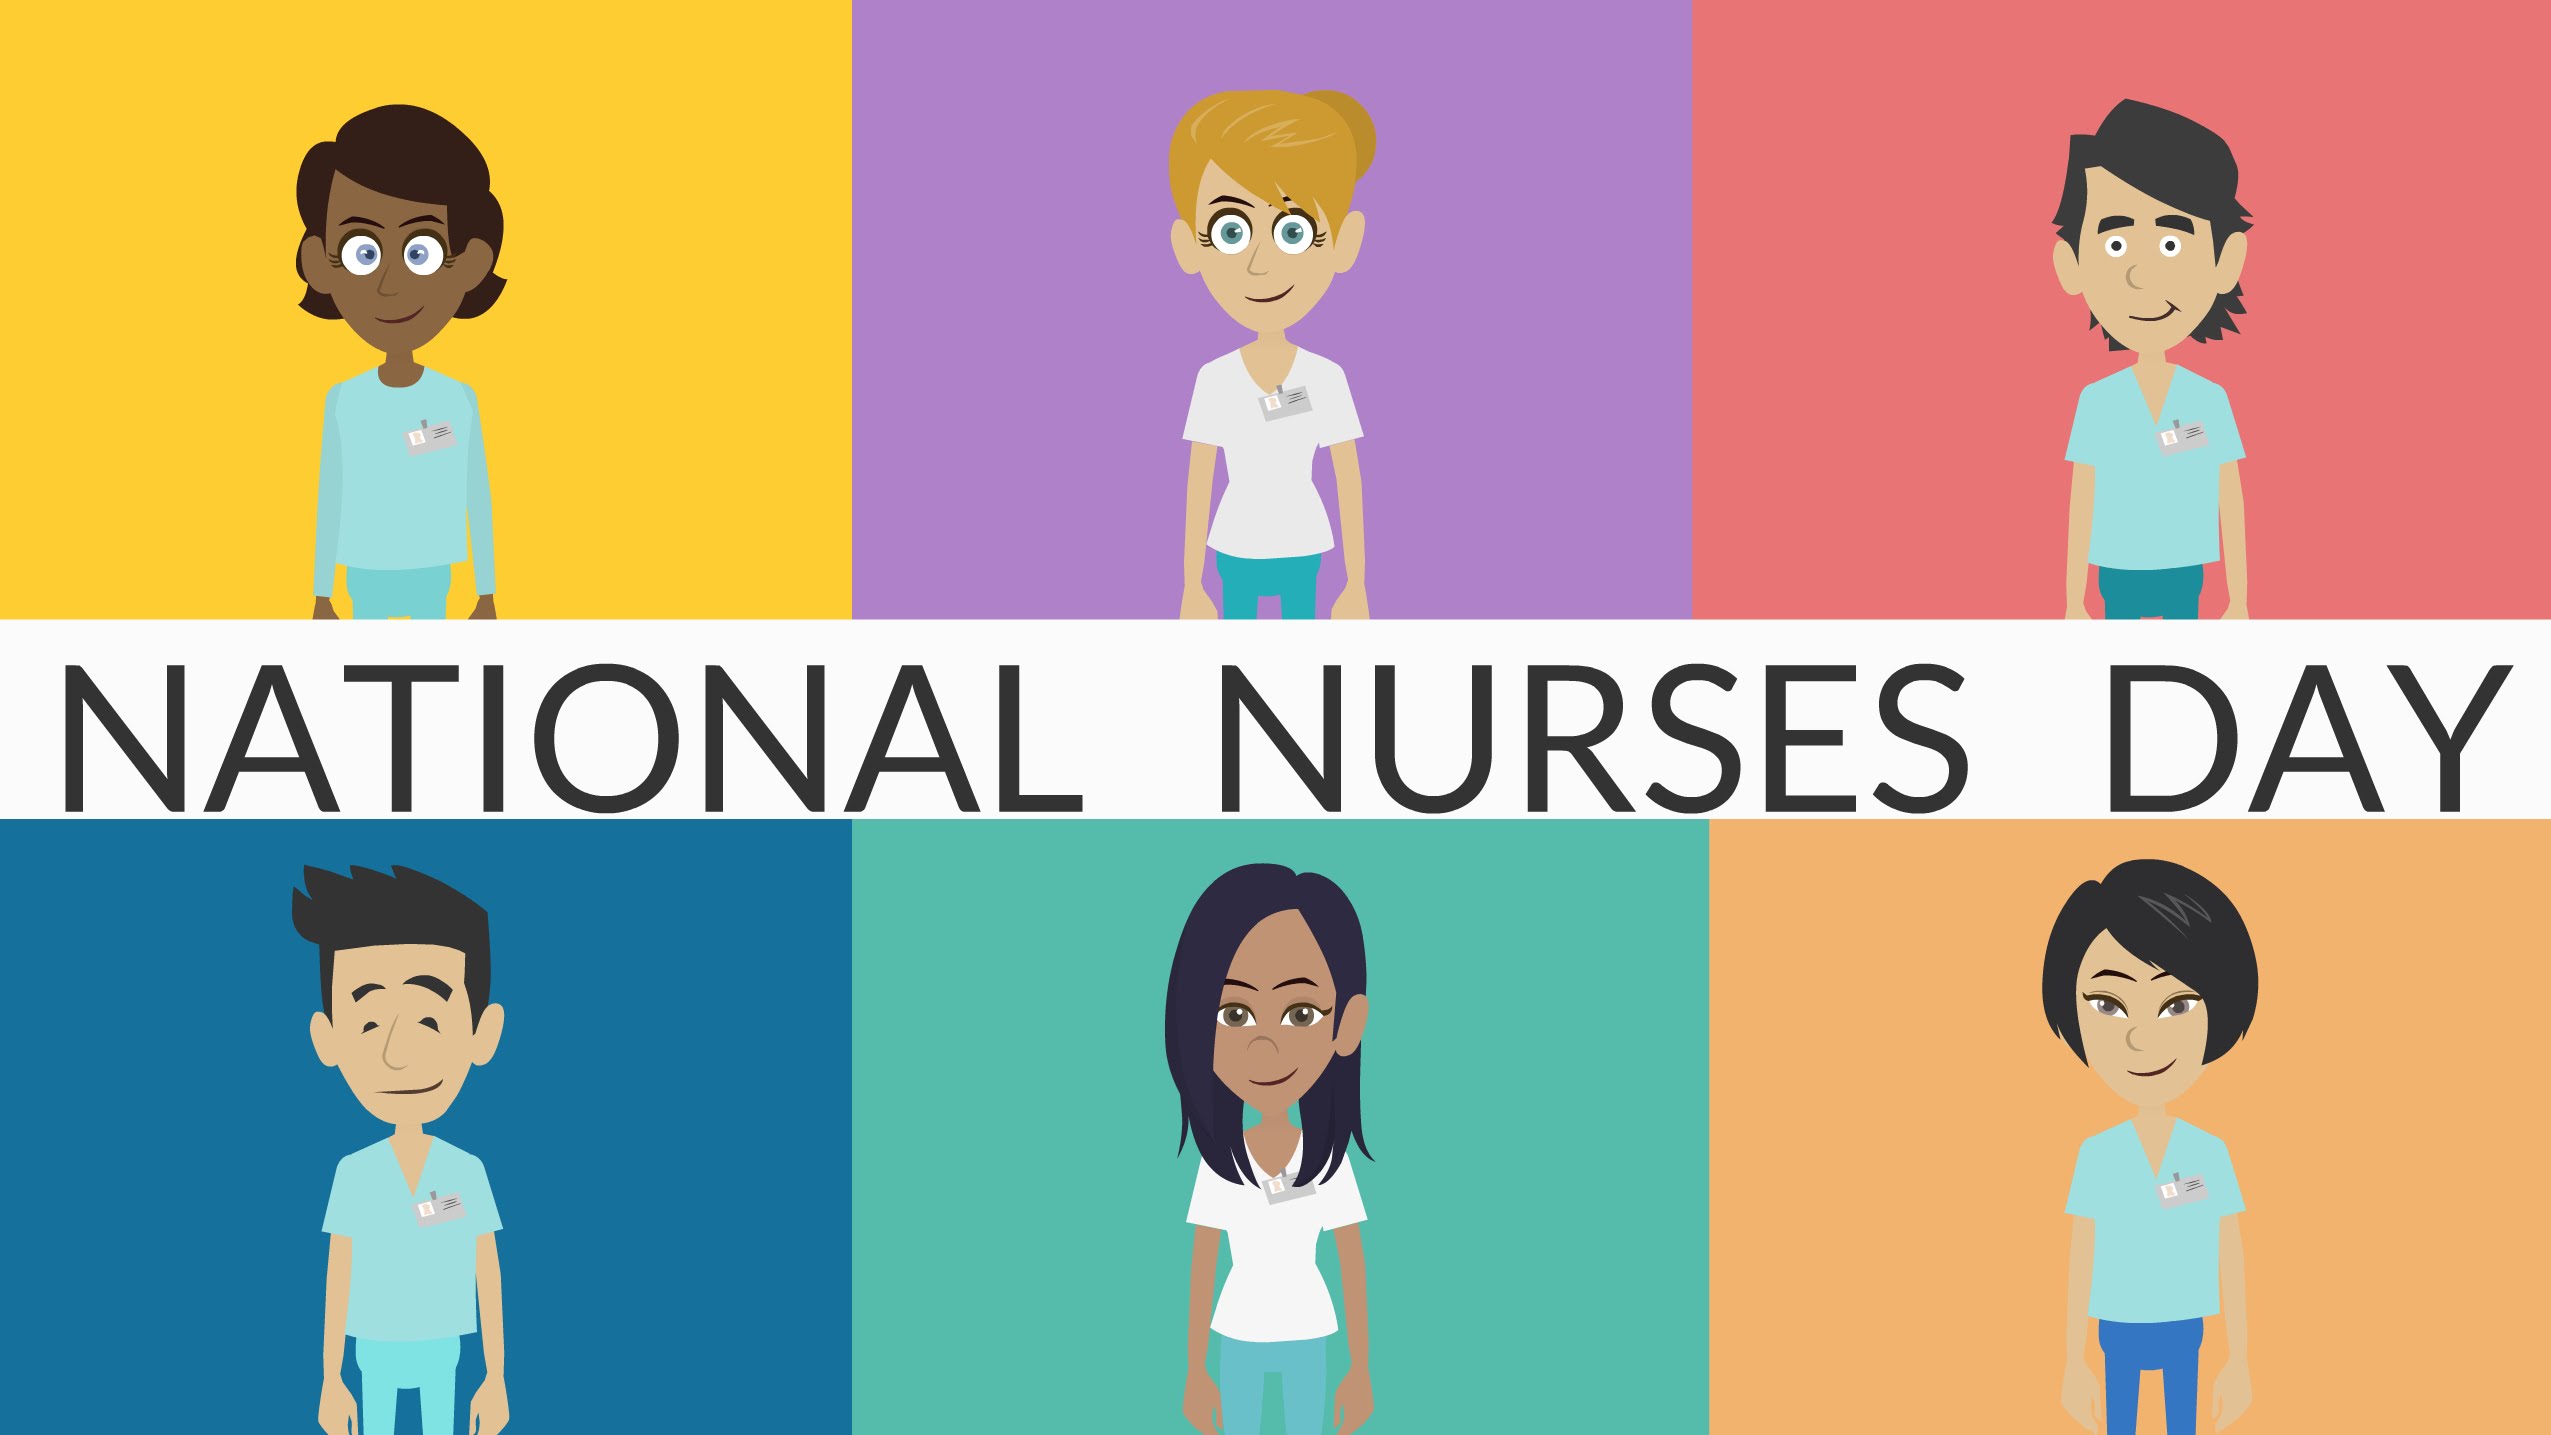 National Nurses Day 2016 - YouTube